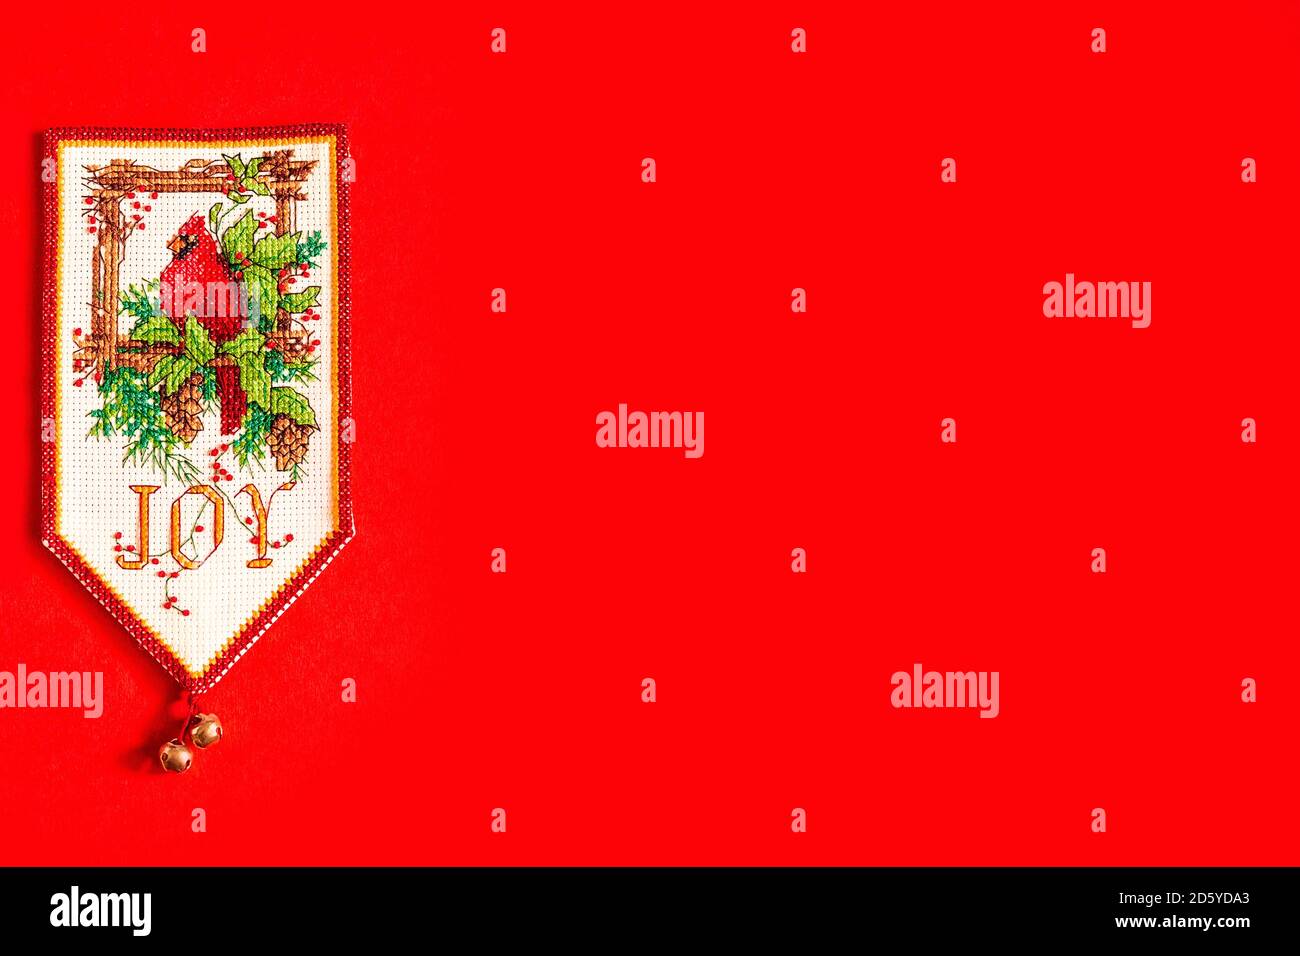 Fondo de Navidad con bandera de año nuevo bordada sobre fondo rojo, fiesta, año nuevo y concepto de Navidad. Pájaro de Navidad en un pino Foto de stock